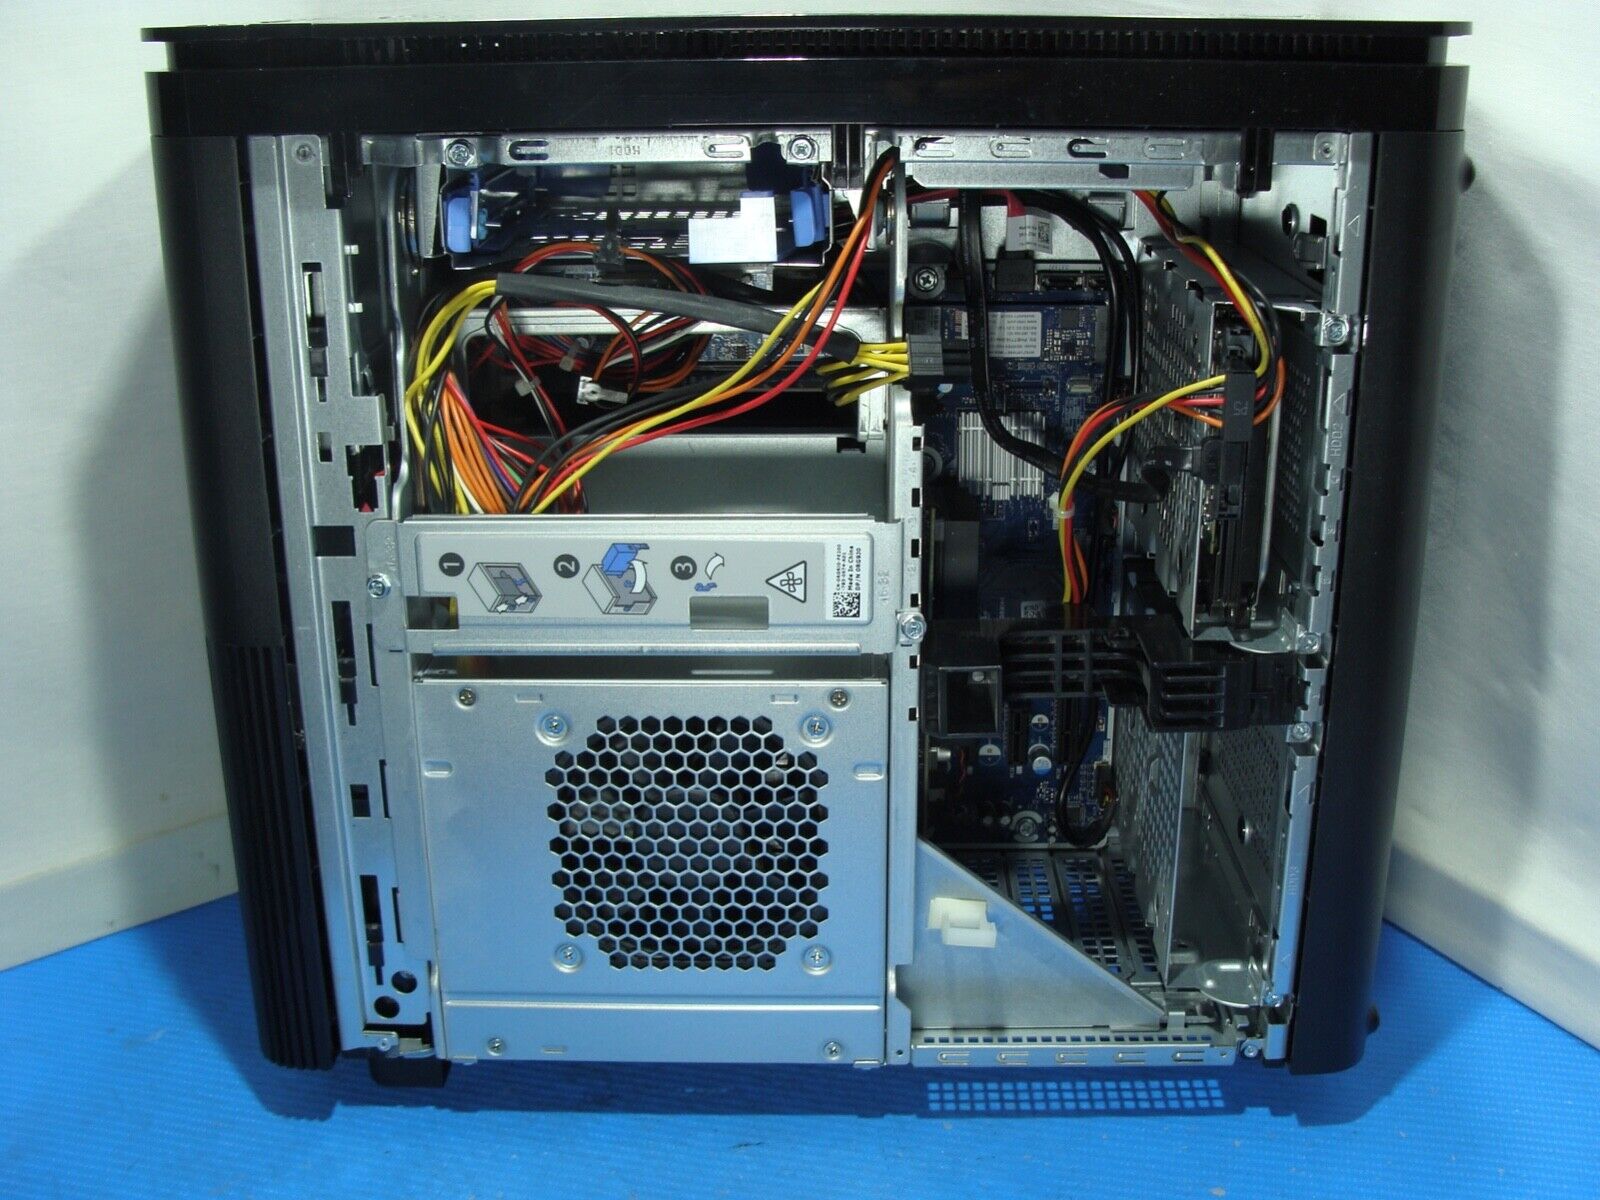 Dell XPS 8920 Desktop - Intel Core i7-7700 7th Generation Quad